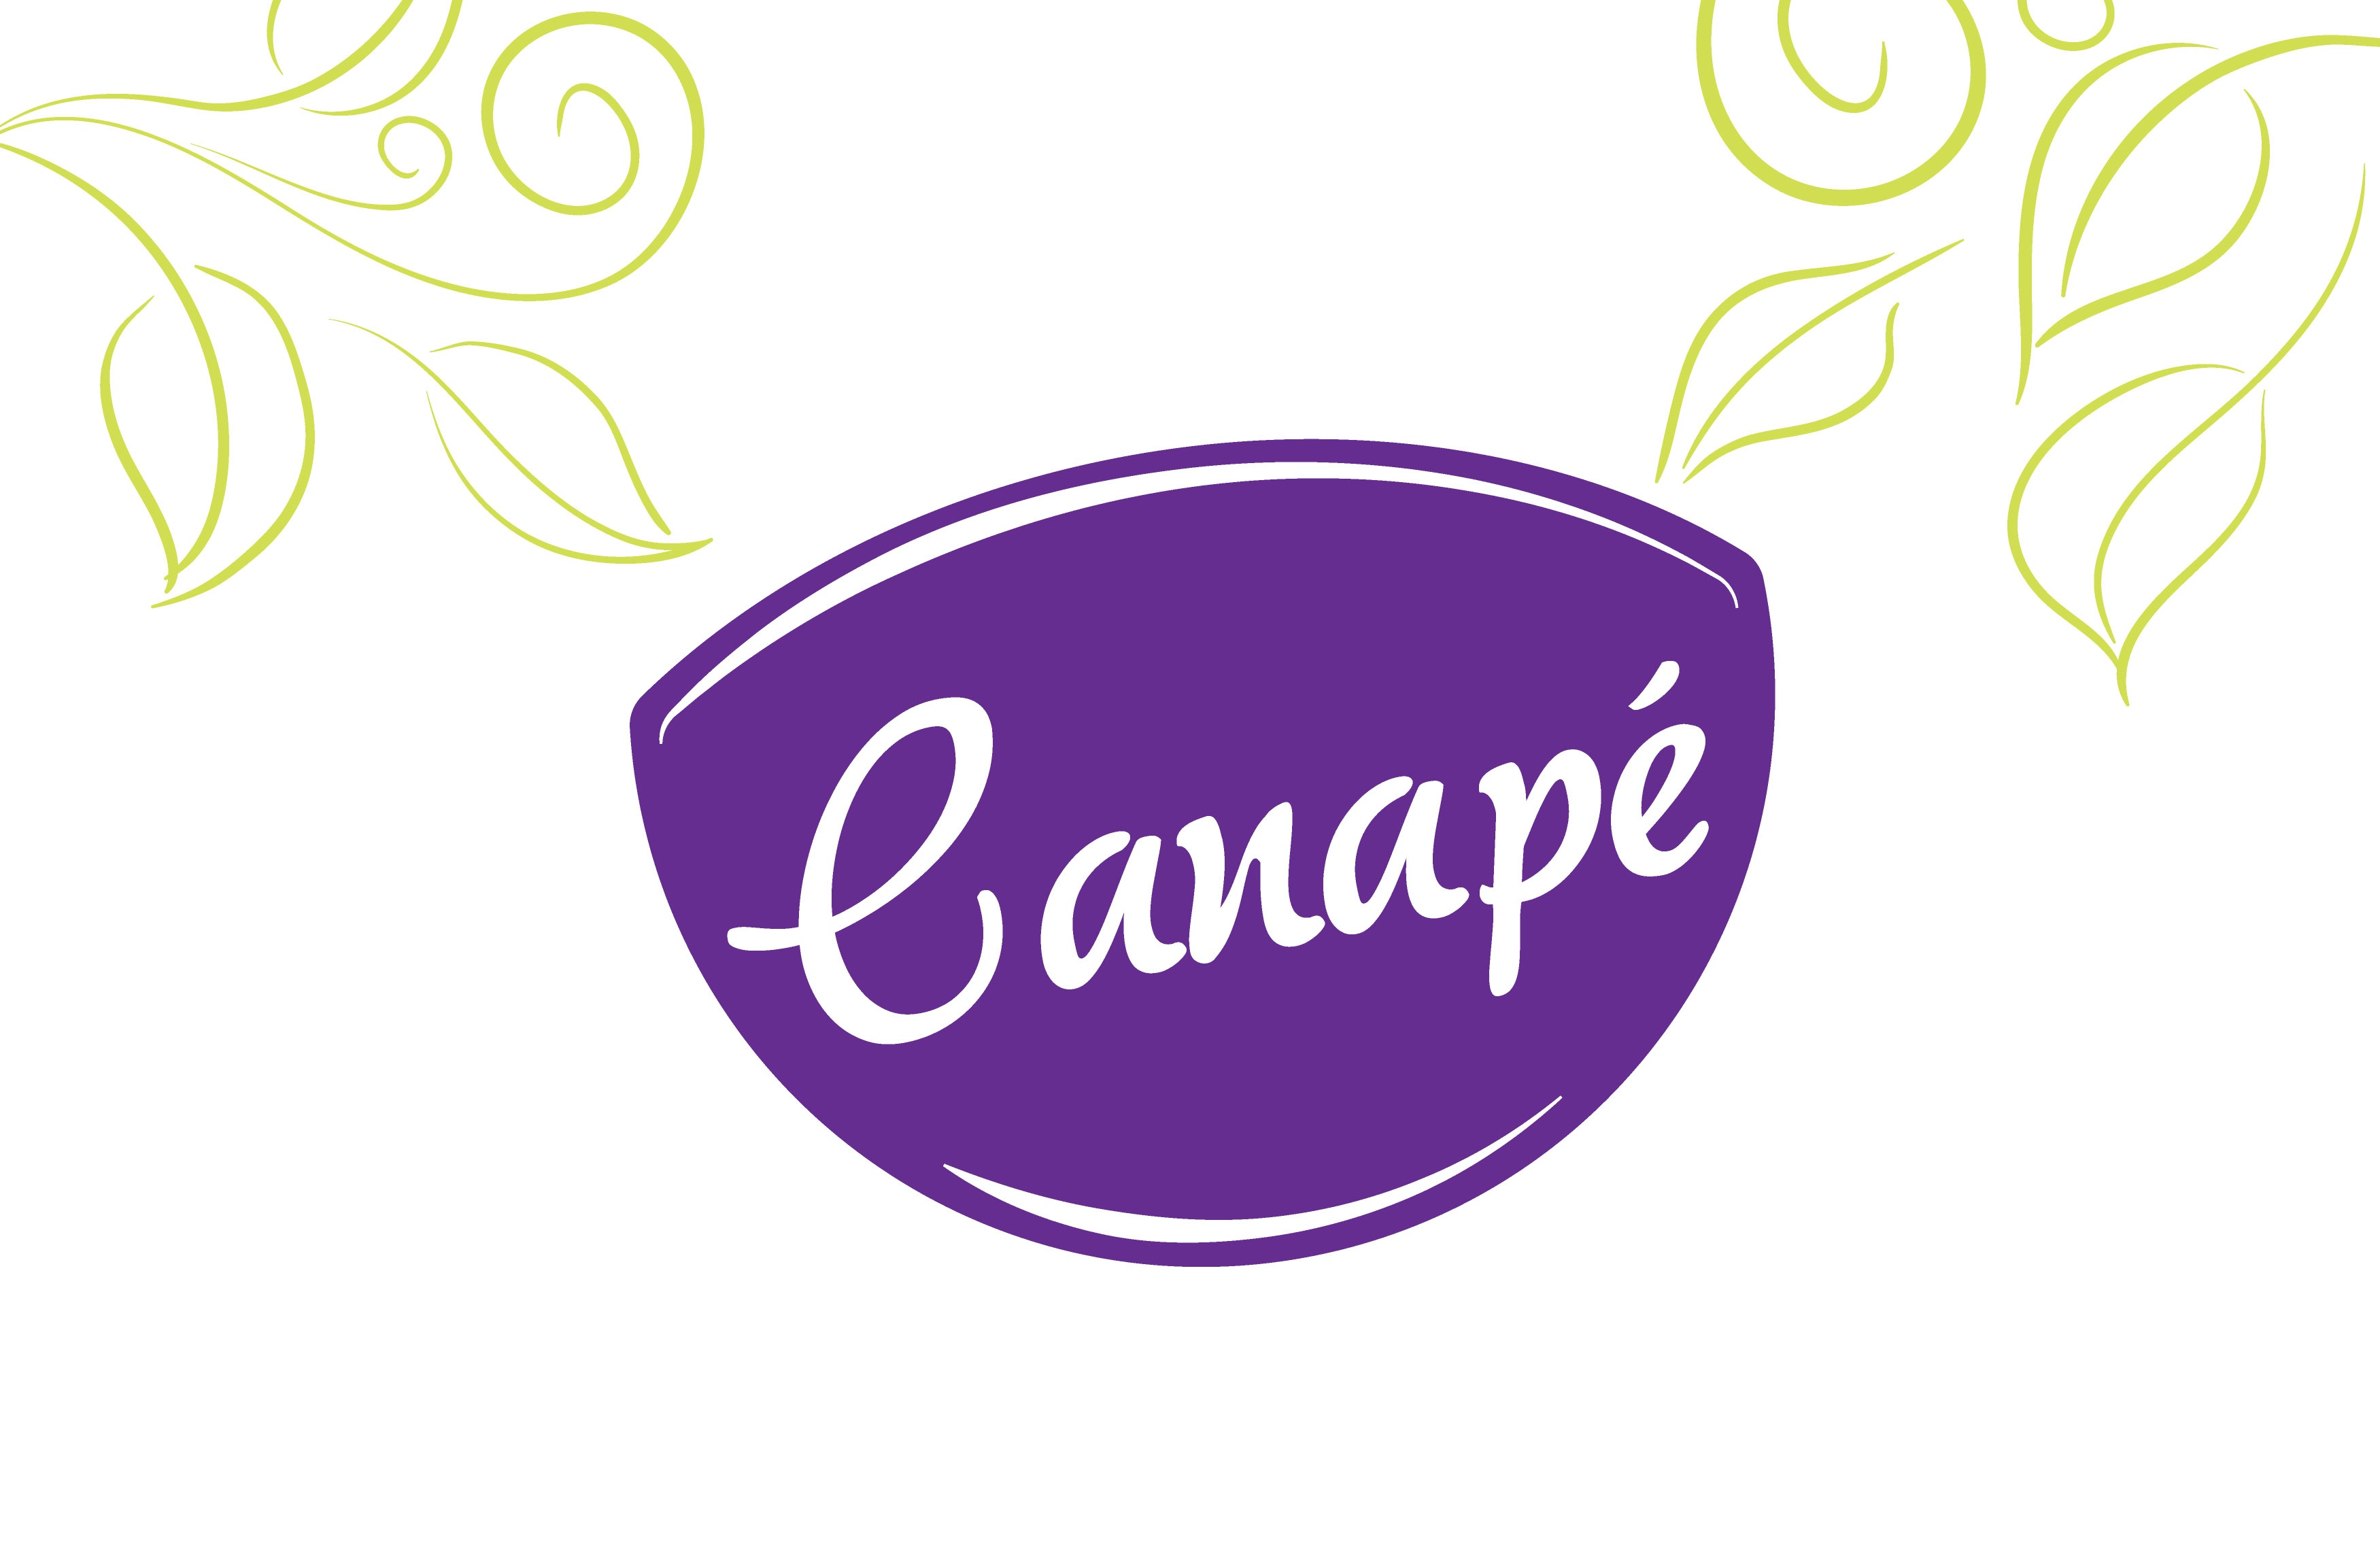 Diseño Brand design Canapé